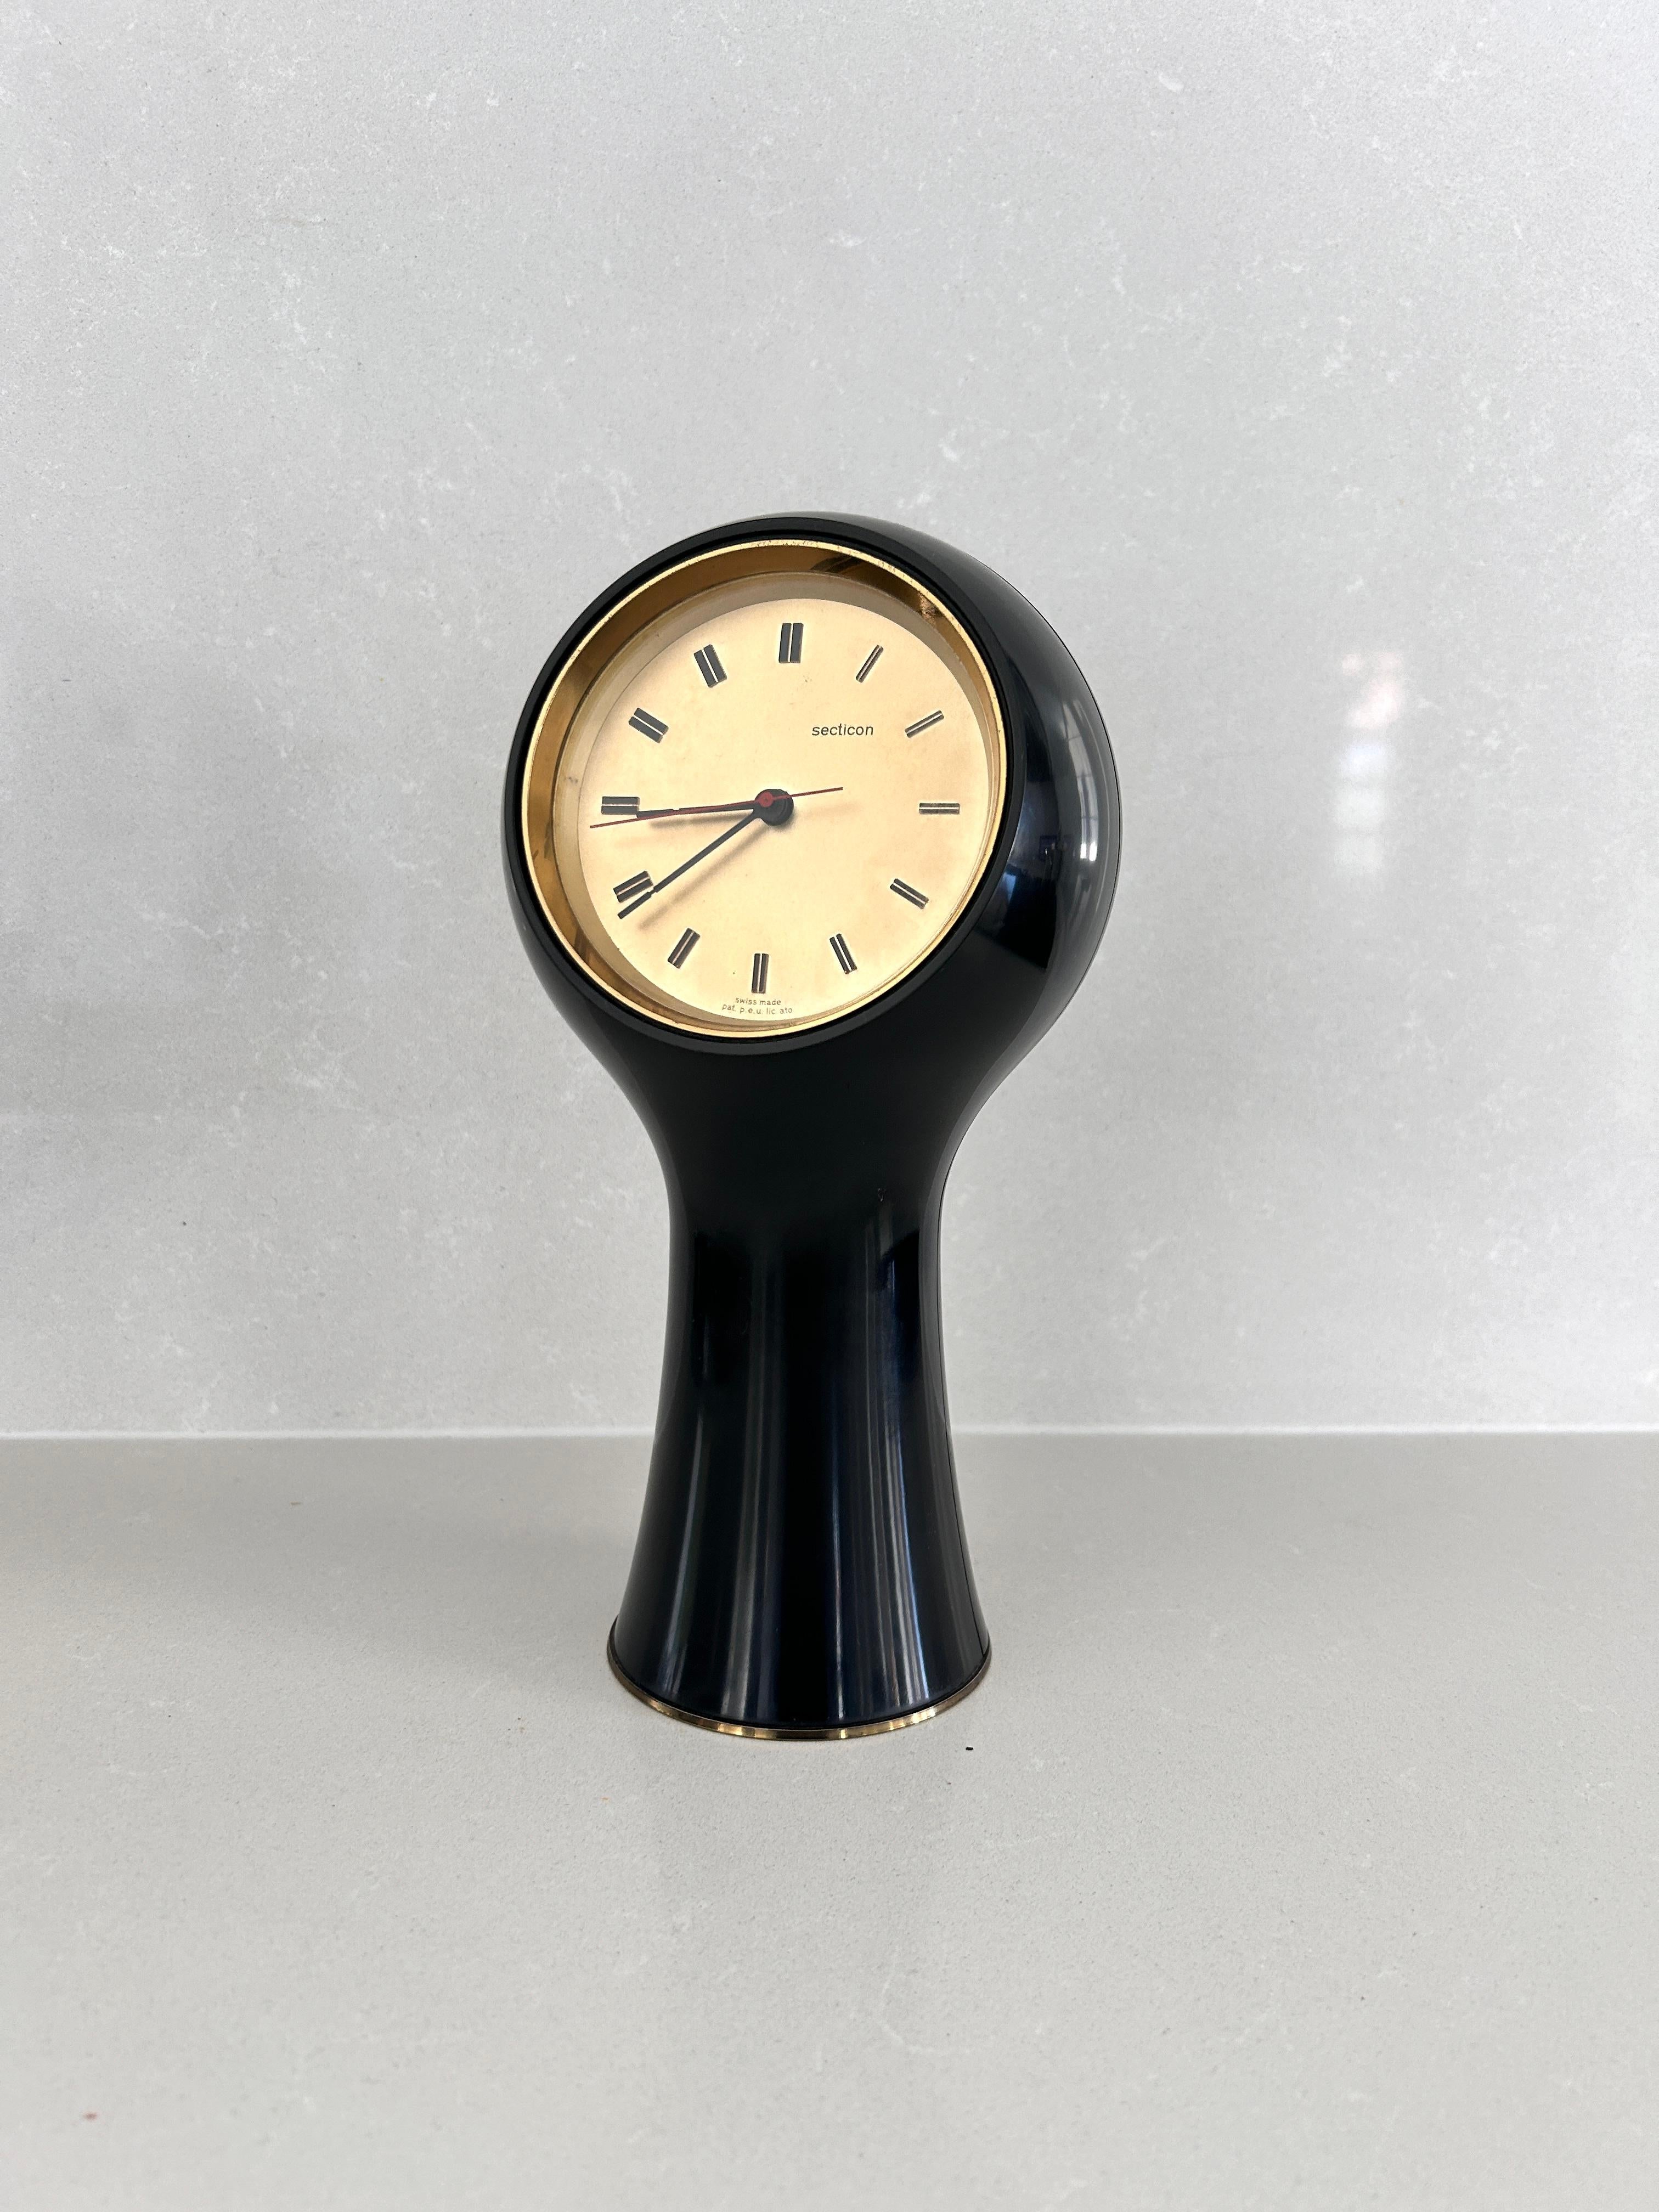 Horloge de table conçue par Angelo Mangiarotti et Bruno Morassutti en 1956 pour la société suisse Le Porte-Echappement Universel.  

Cadre en plastique noir, mouvement à pile.